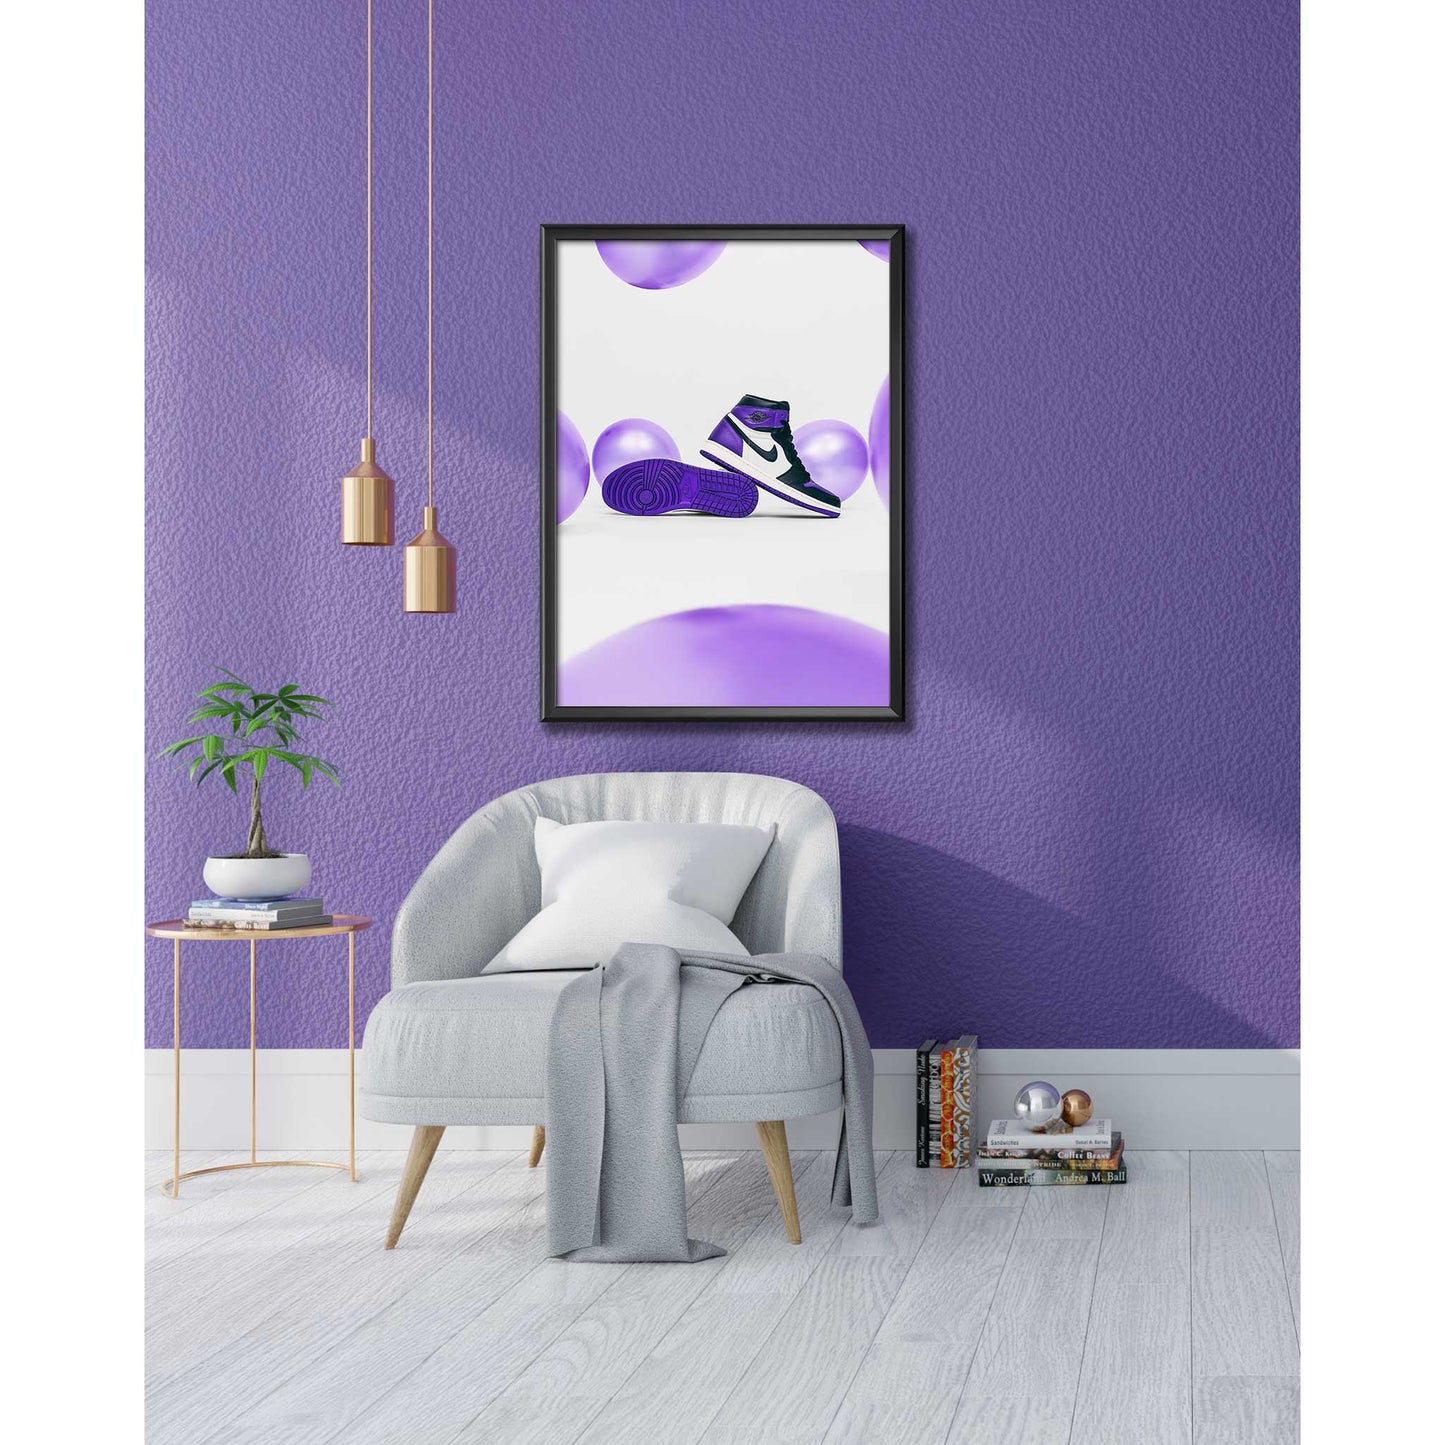 Image of Air Jordan 1 High Court Purple Sneaker Poster